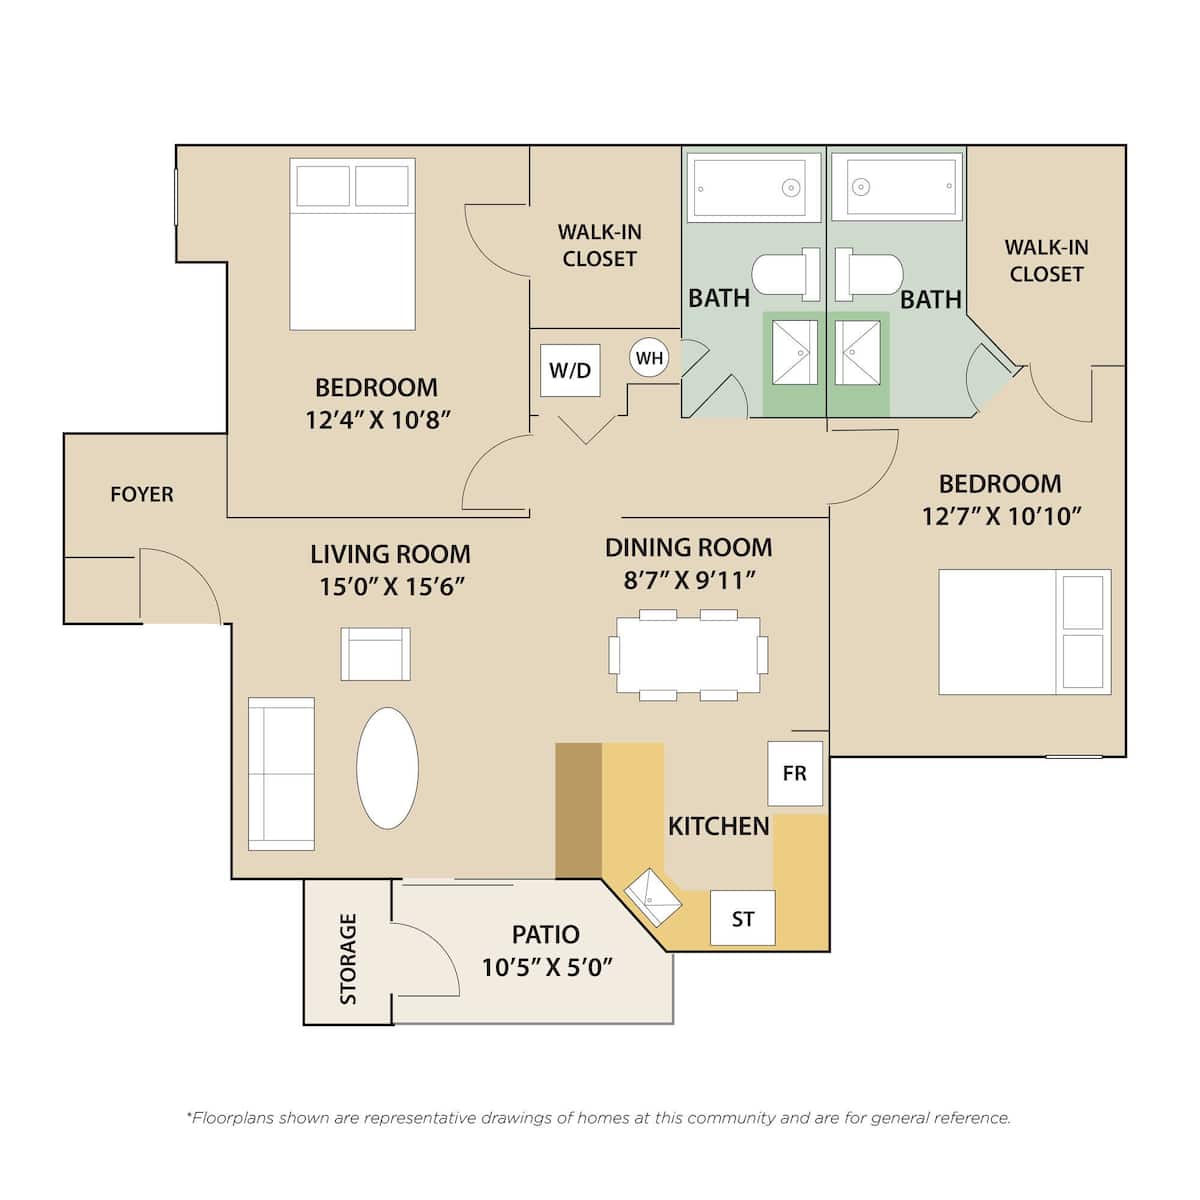 Floorplan diagram for 2 Bedroom / 2 Bath, showing 2 bedroom